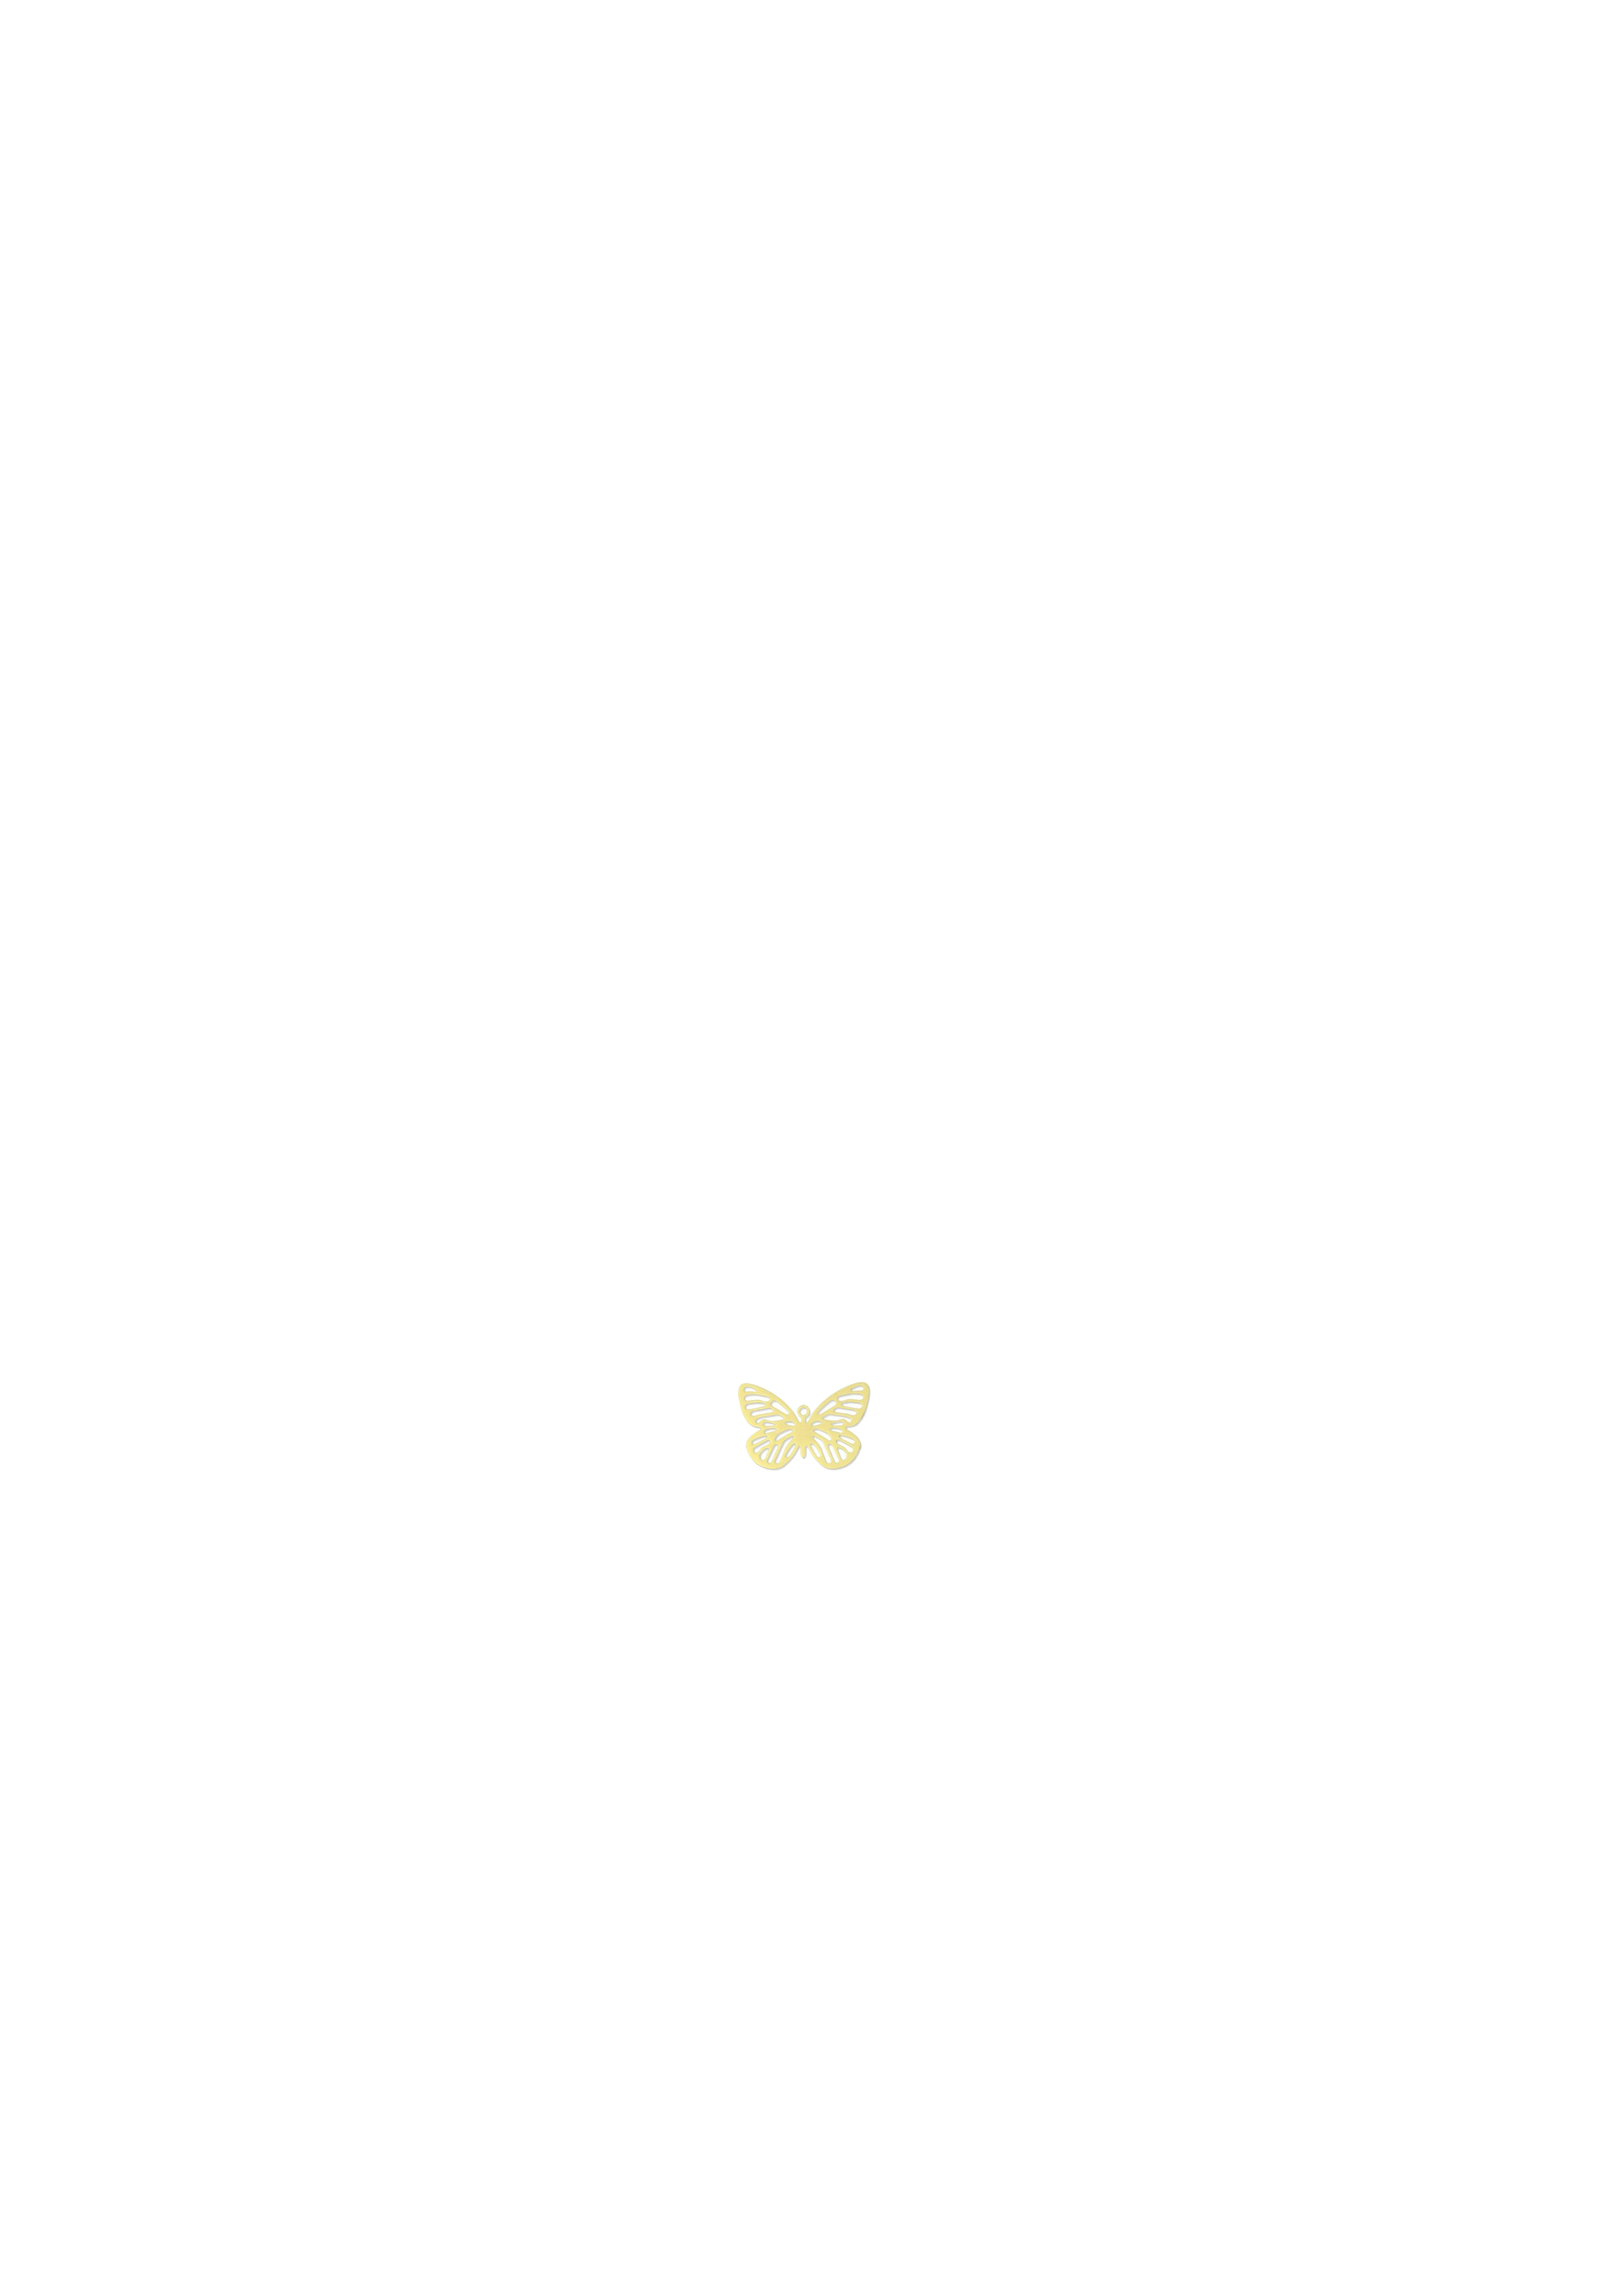 papillon doré